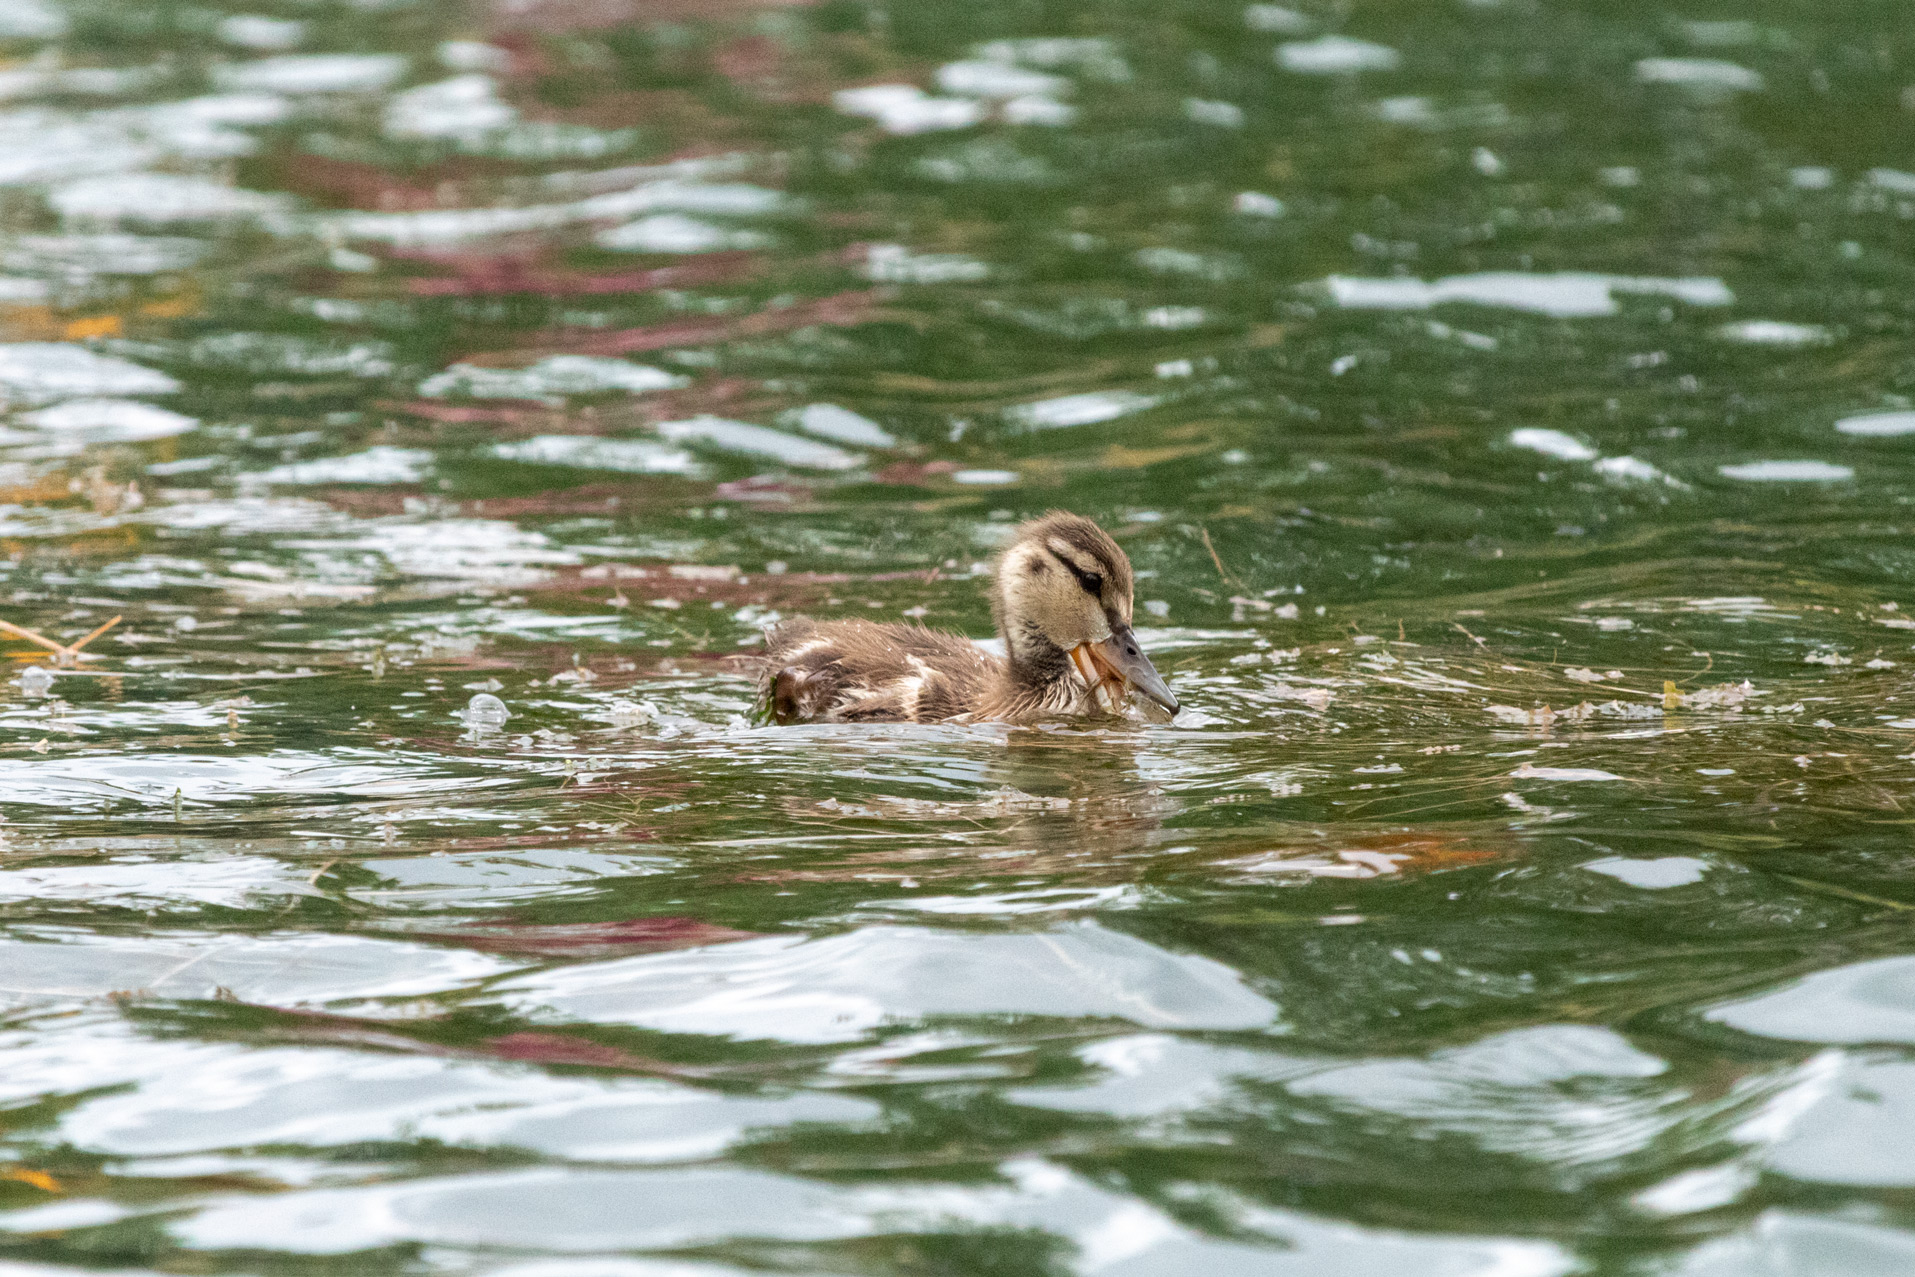 Baby mallard duck swimming and munching on seaweed